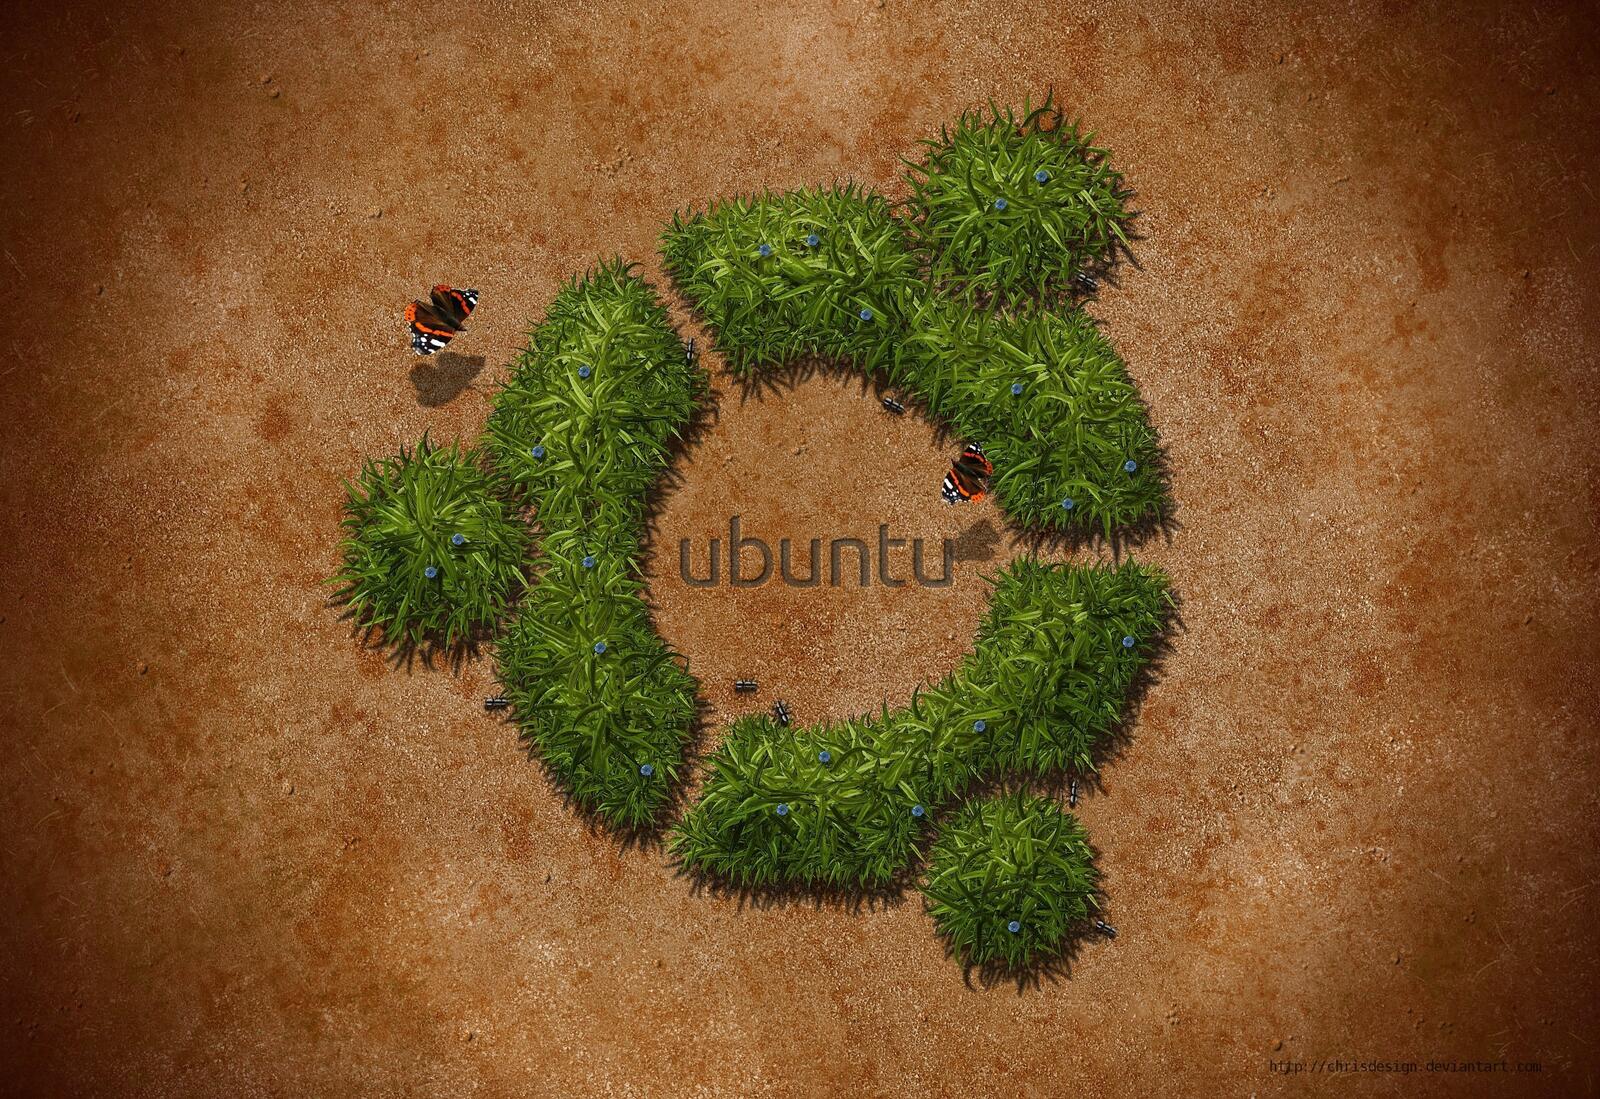 Обои GNU Linux ubuntu на рабочий стол